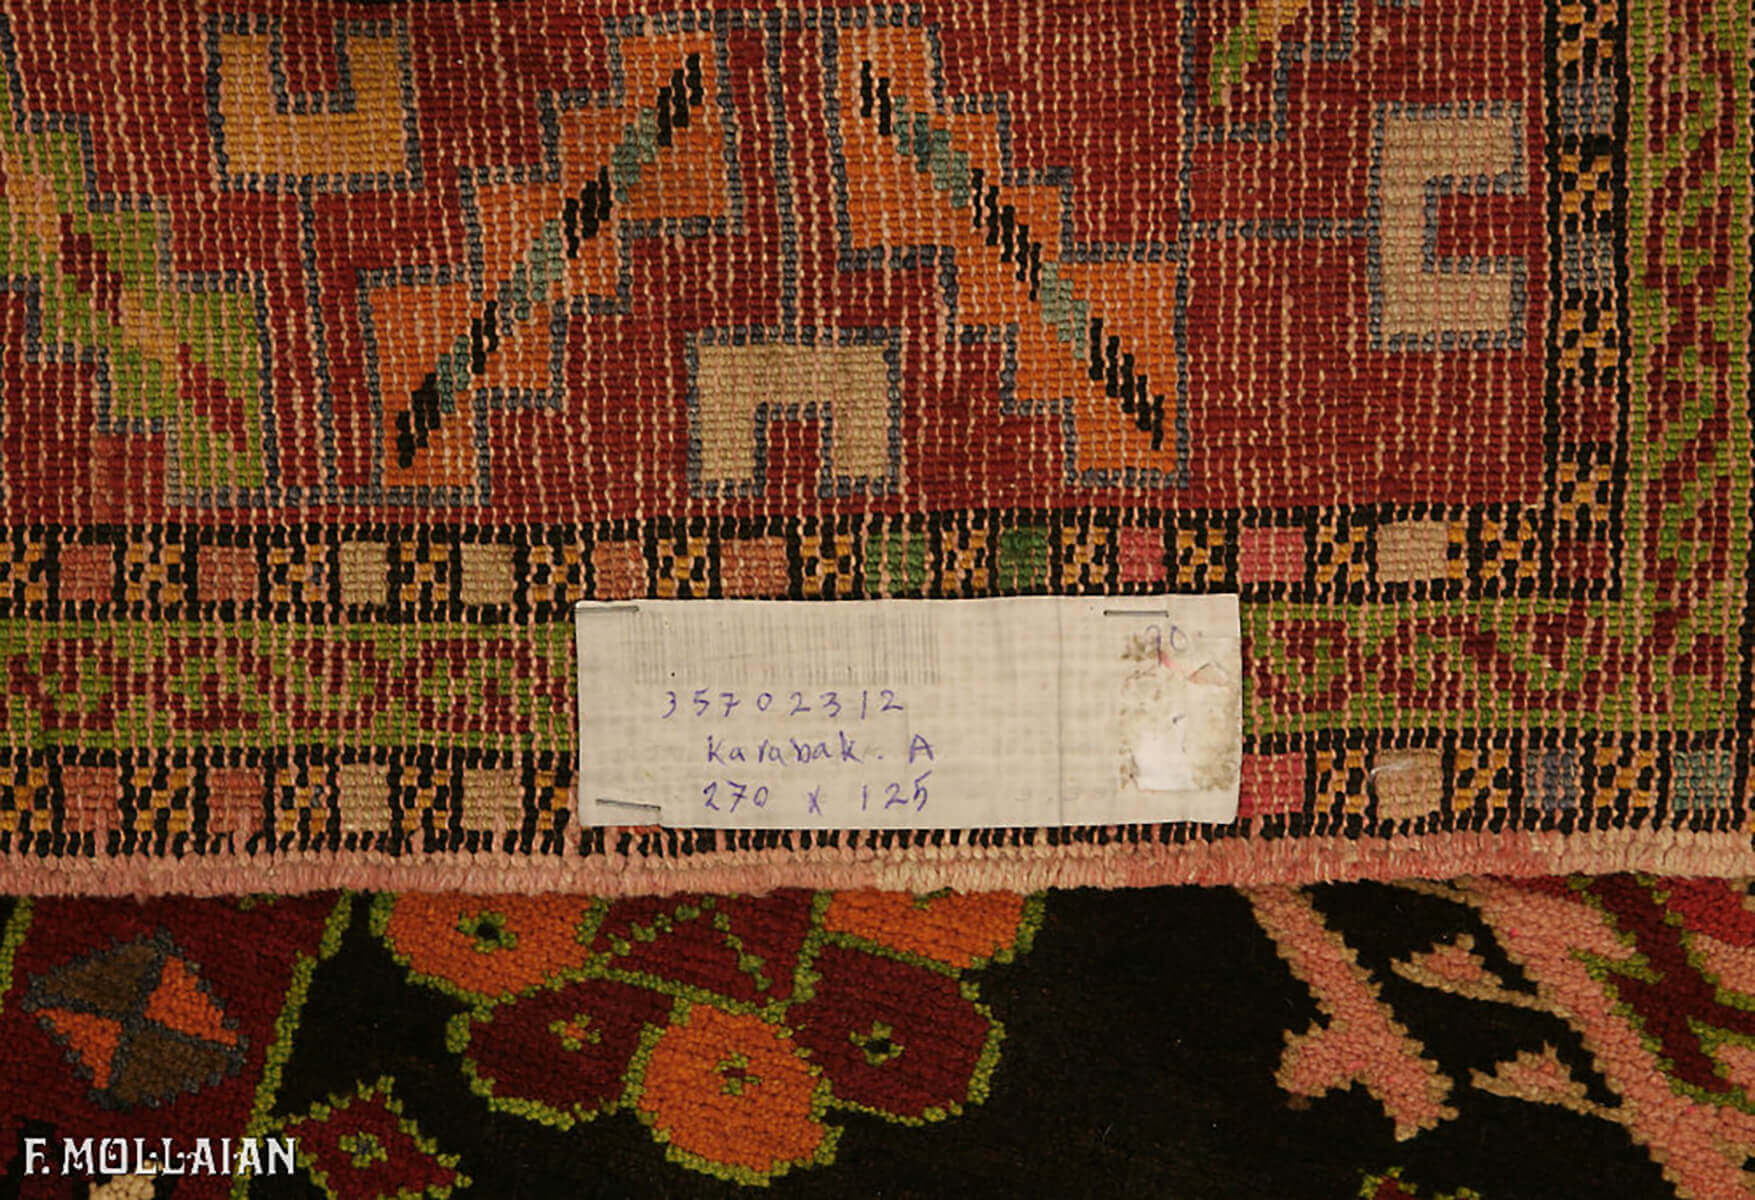 Teppich Kaukasischer Antiker Karabakh (Qarabağ) n°:35702312